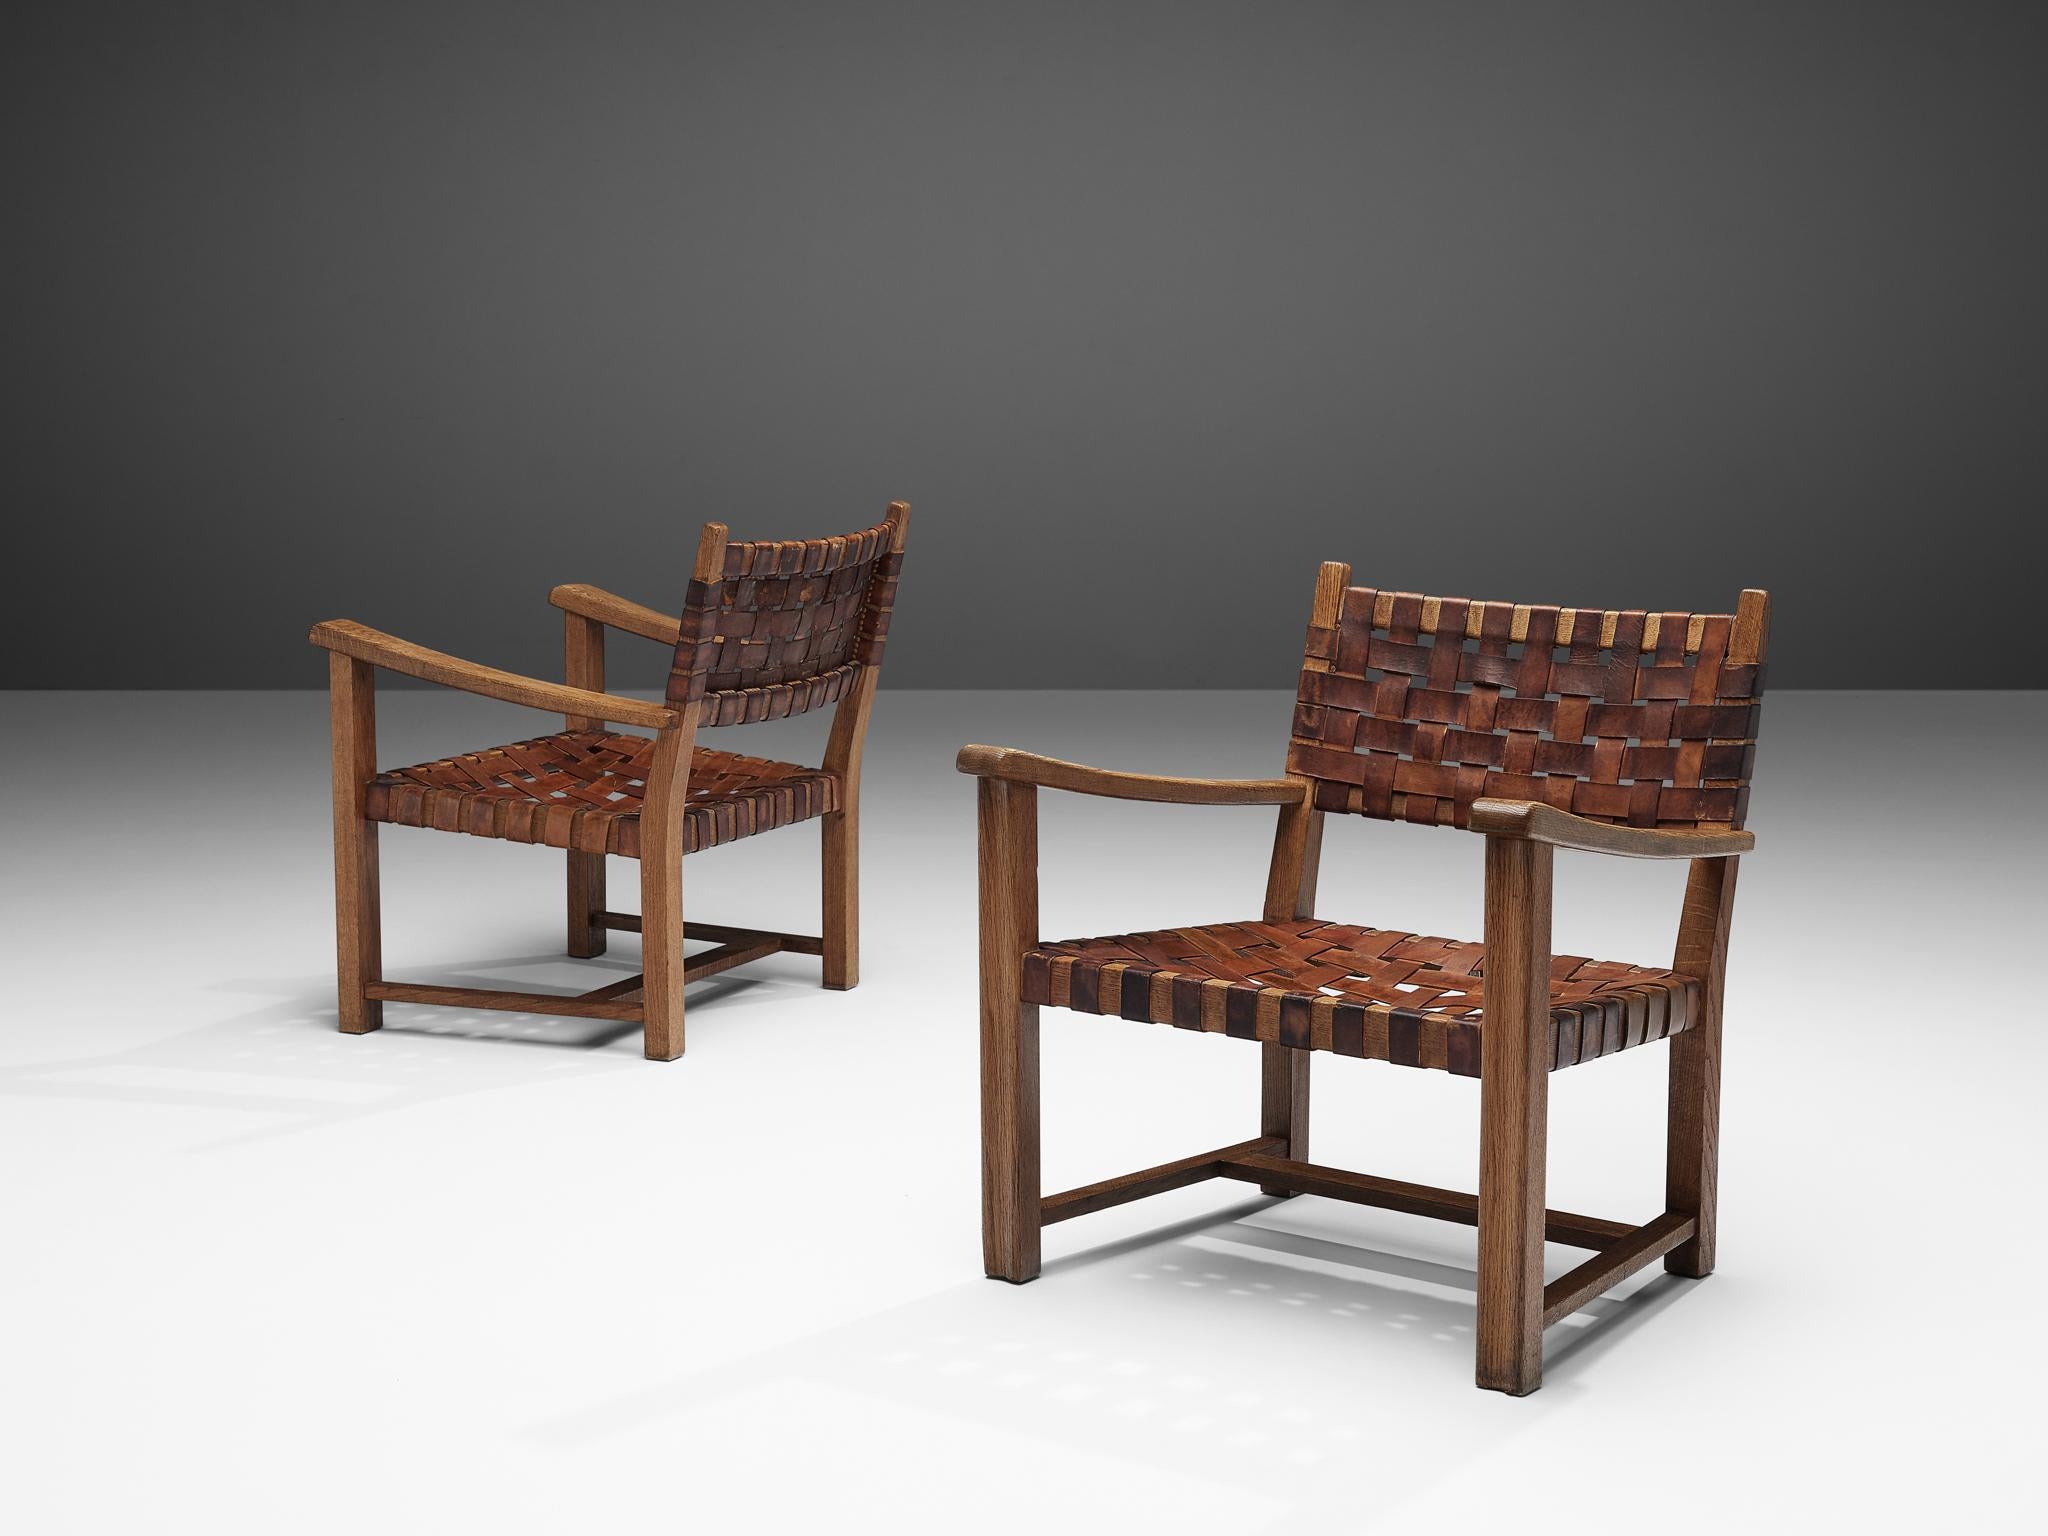 Paire de fauteuils, cuir cognac, chêne massif, Europe, années 1960

Paire de magnifiques fauteuils en chêne massif. Ces fauteuils ont un aspect rustique grâce à leur cadre en chêne robuste. Les accoudoirs sont légèrement incurvés avec des bords